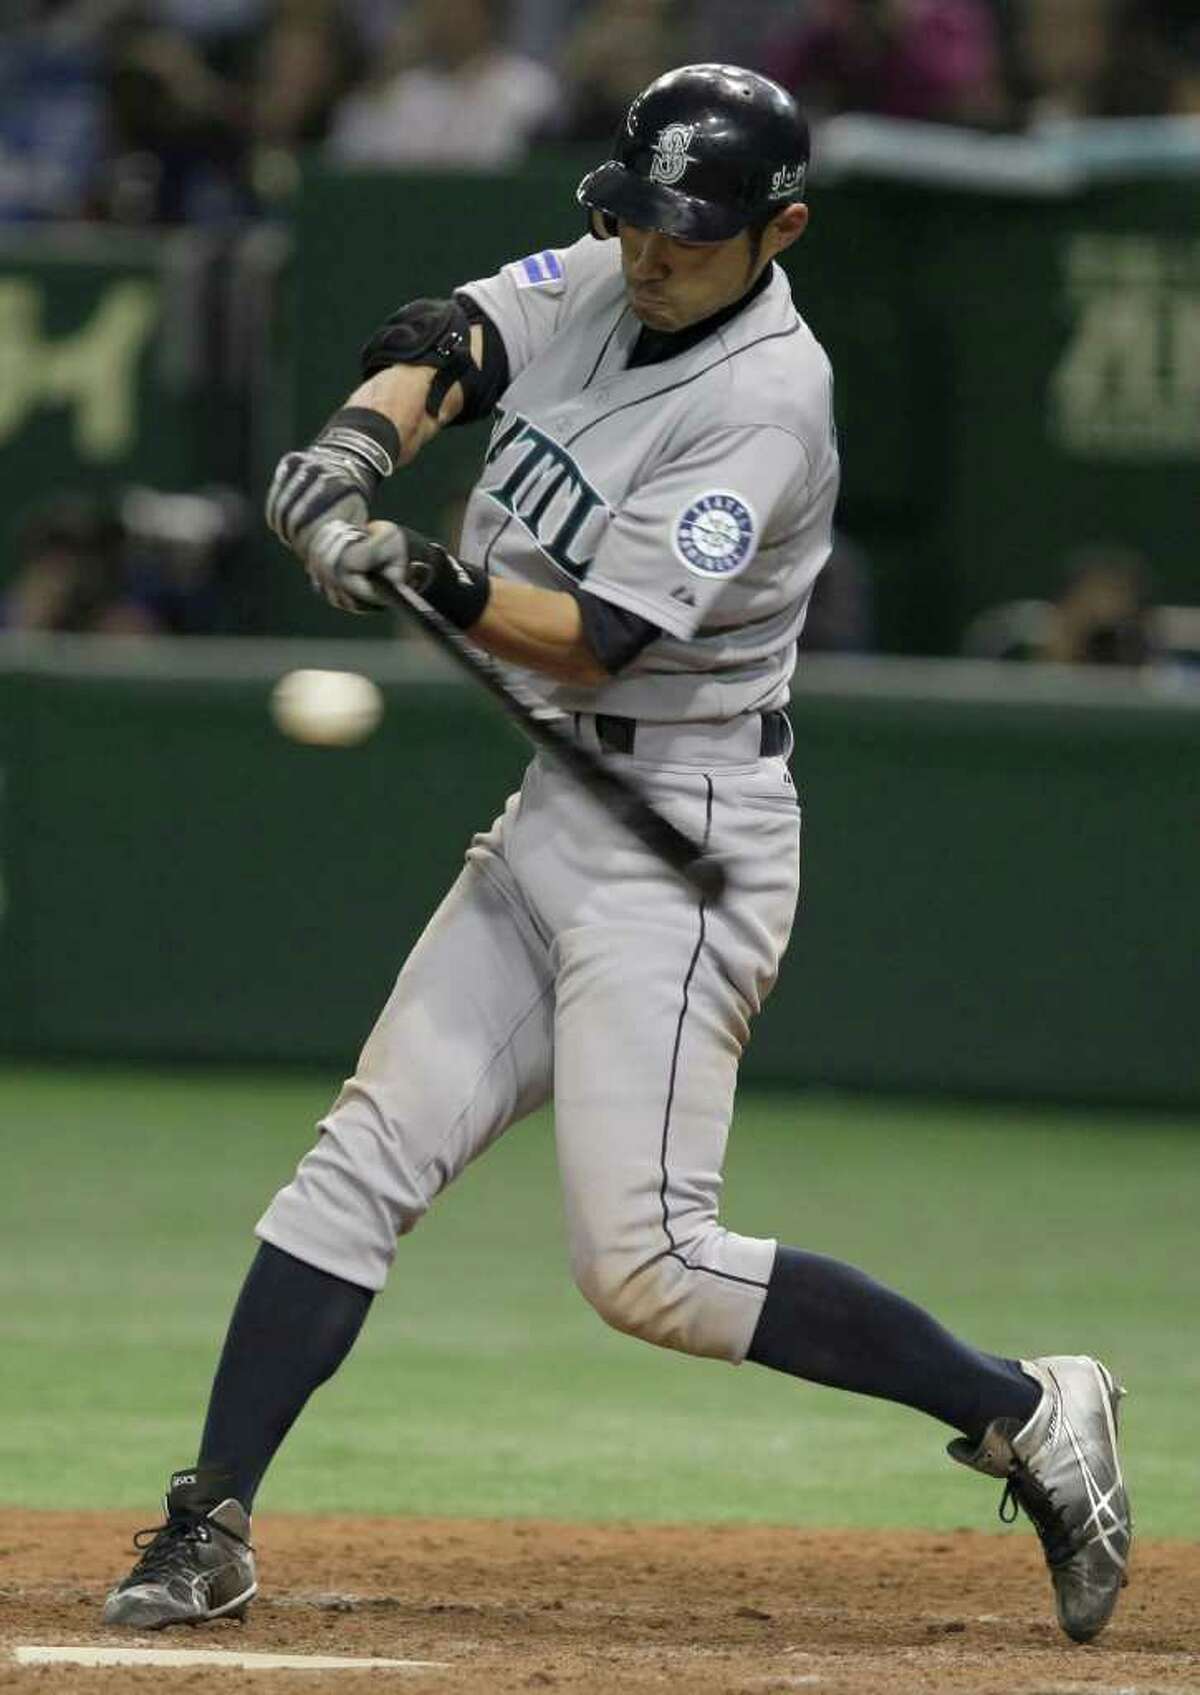 Ichiro right at home in MLB's opener